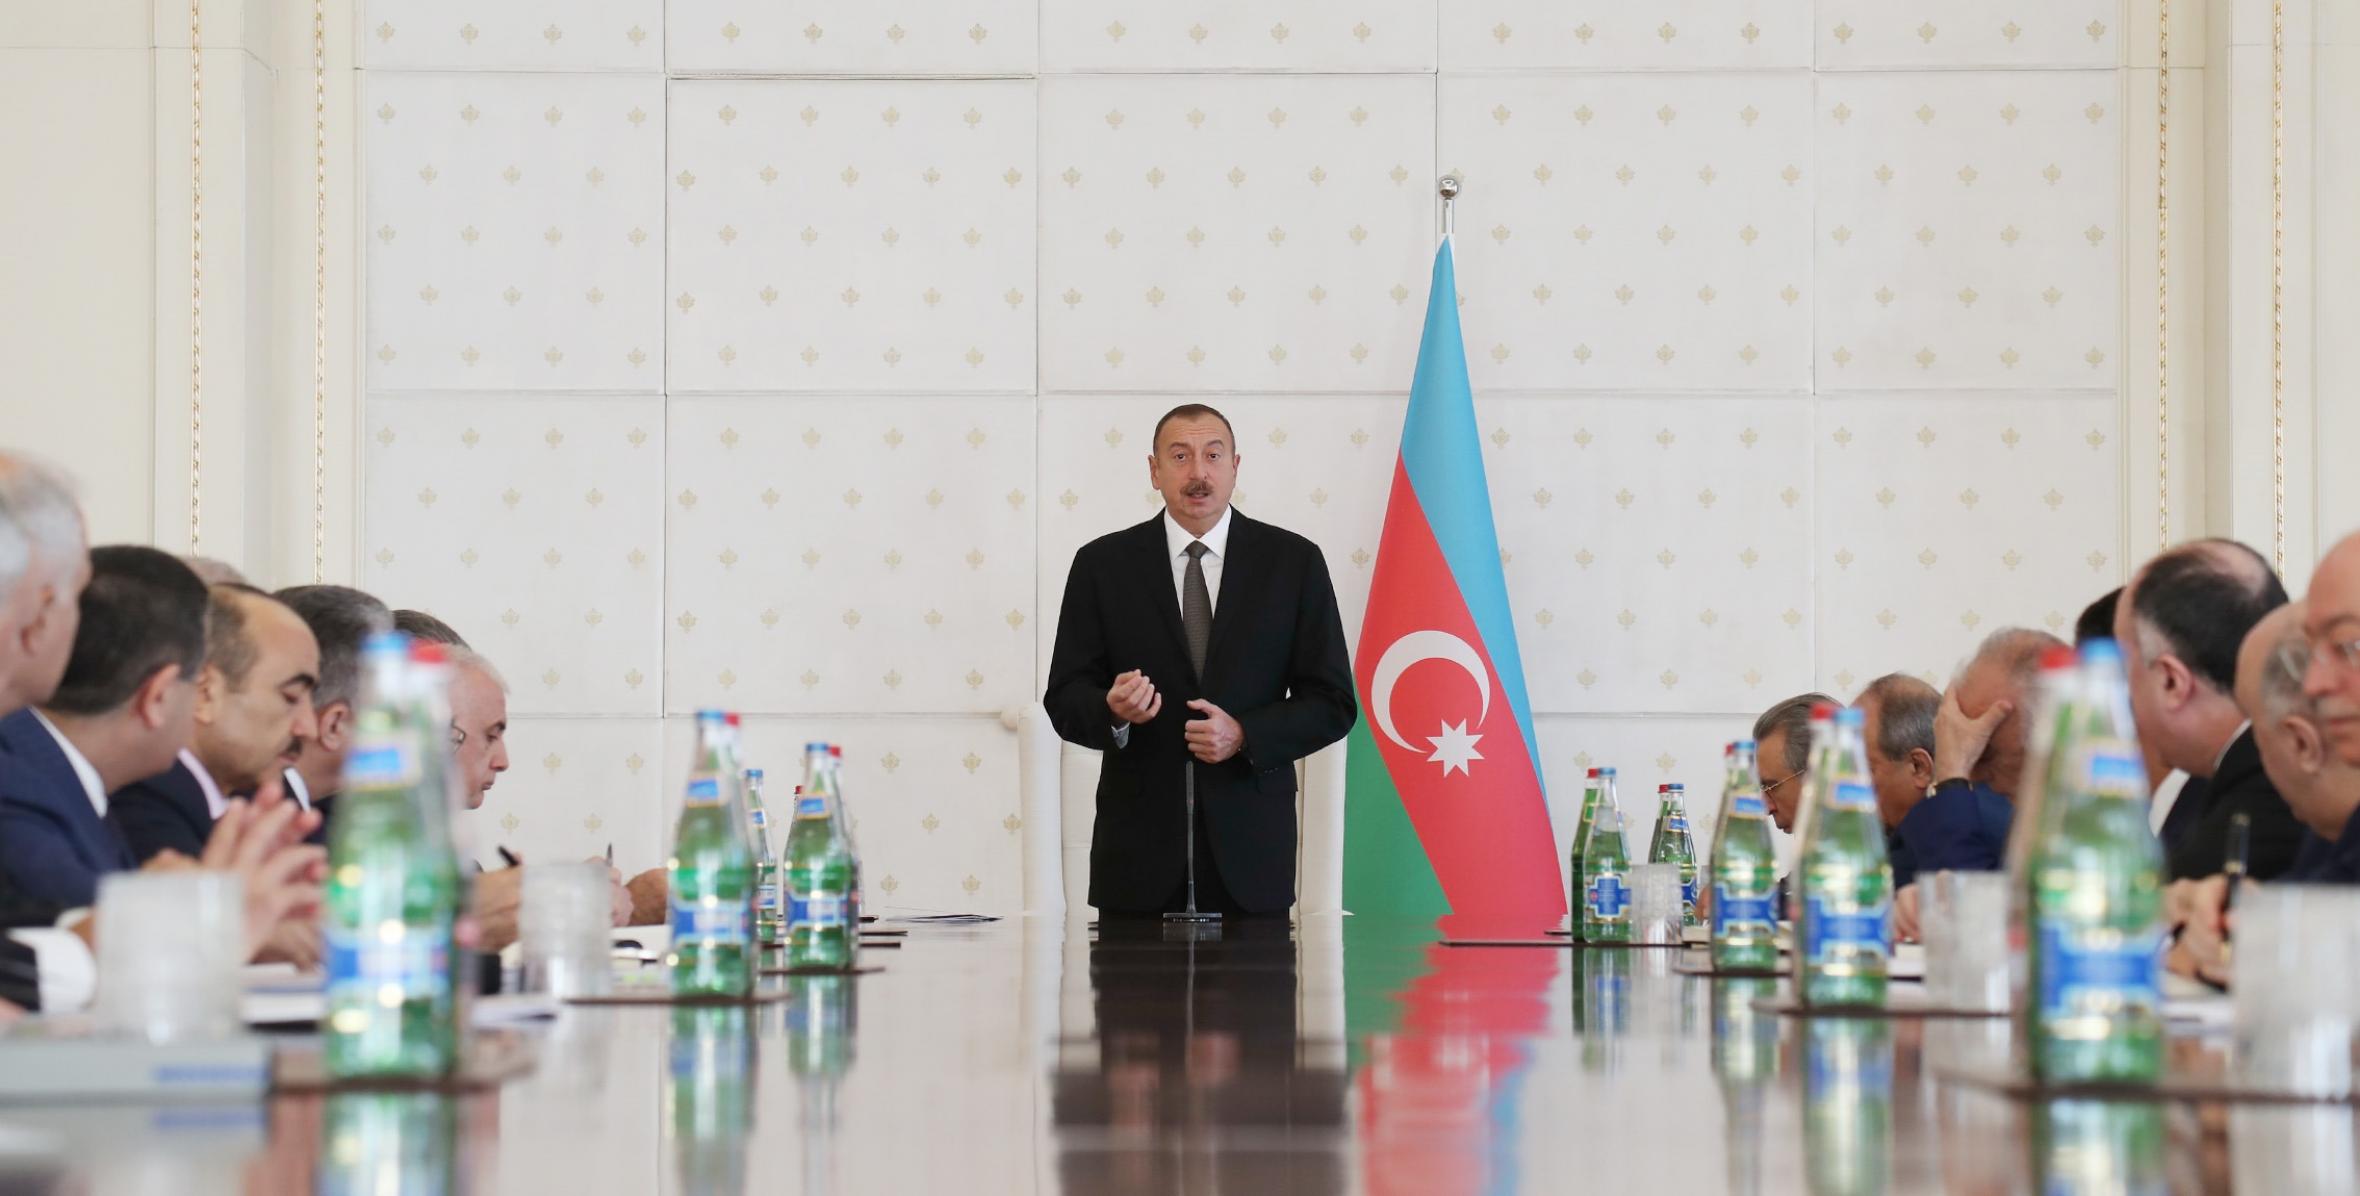 Вступительная речь Ильхама Алиева на заседании Кабинета Министров, посвященное итогам социально-экономического развития девяти месяцев 2016 года и предстоящим задачам